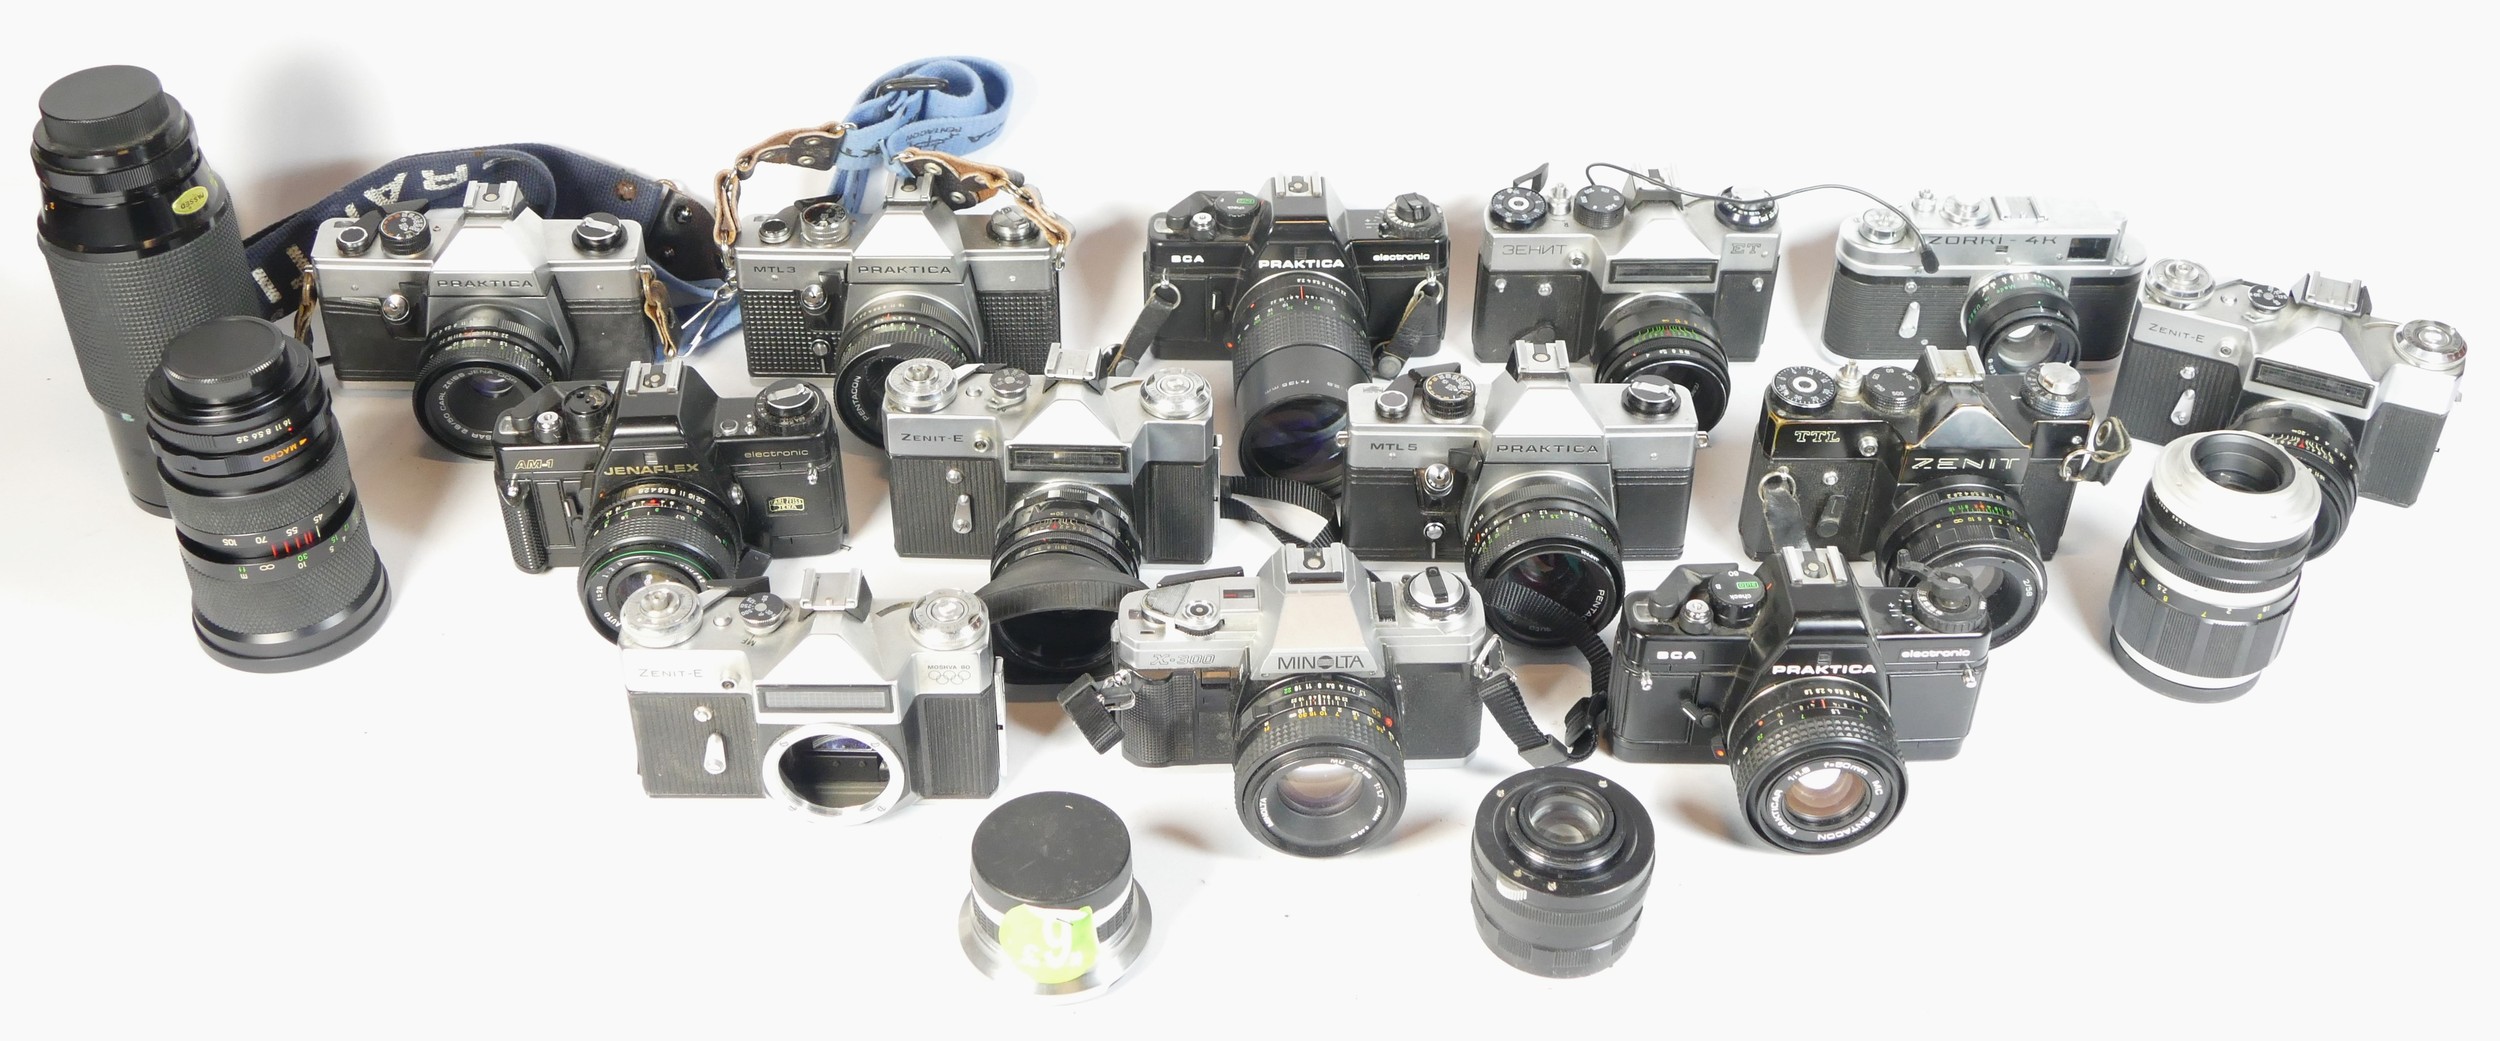 Fourteen SLR vintage film cameras to include a Praktica BCA, a Zenit E, a Minolta x-300 and a